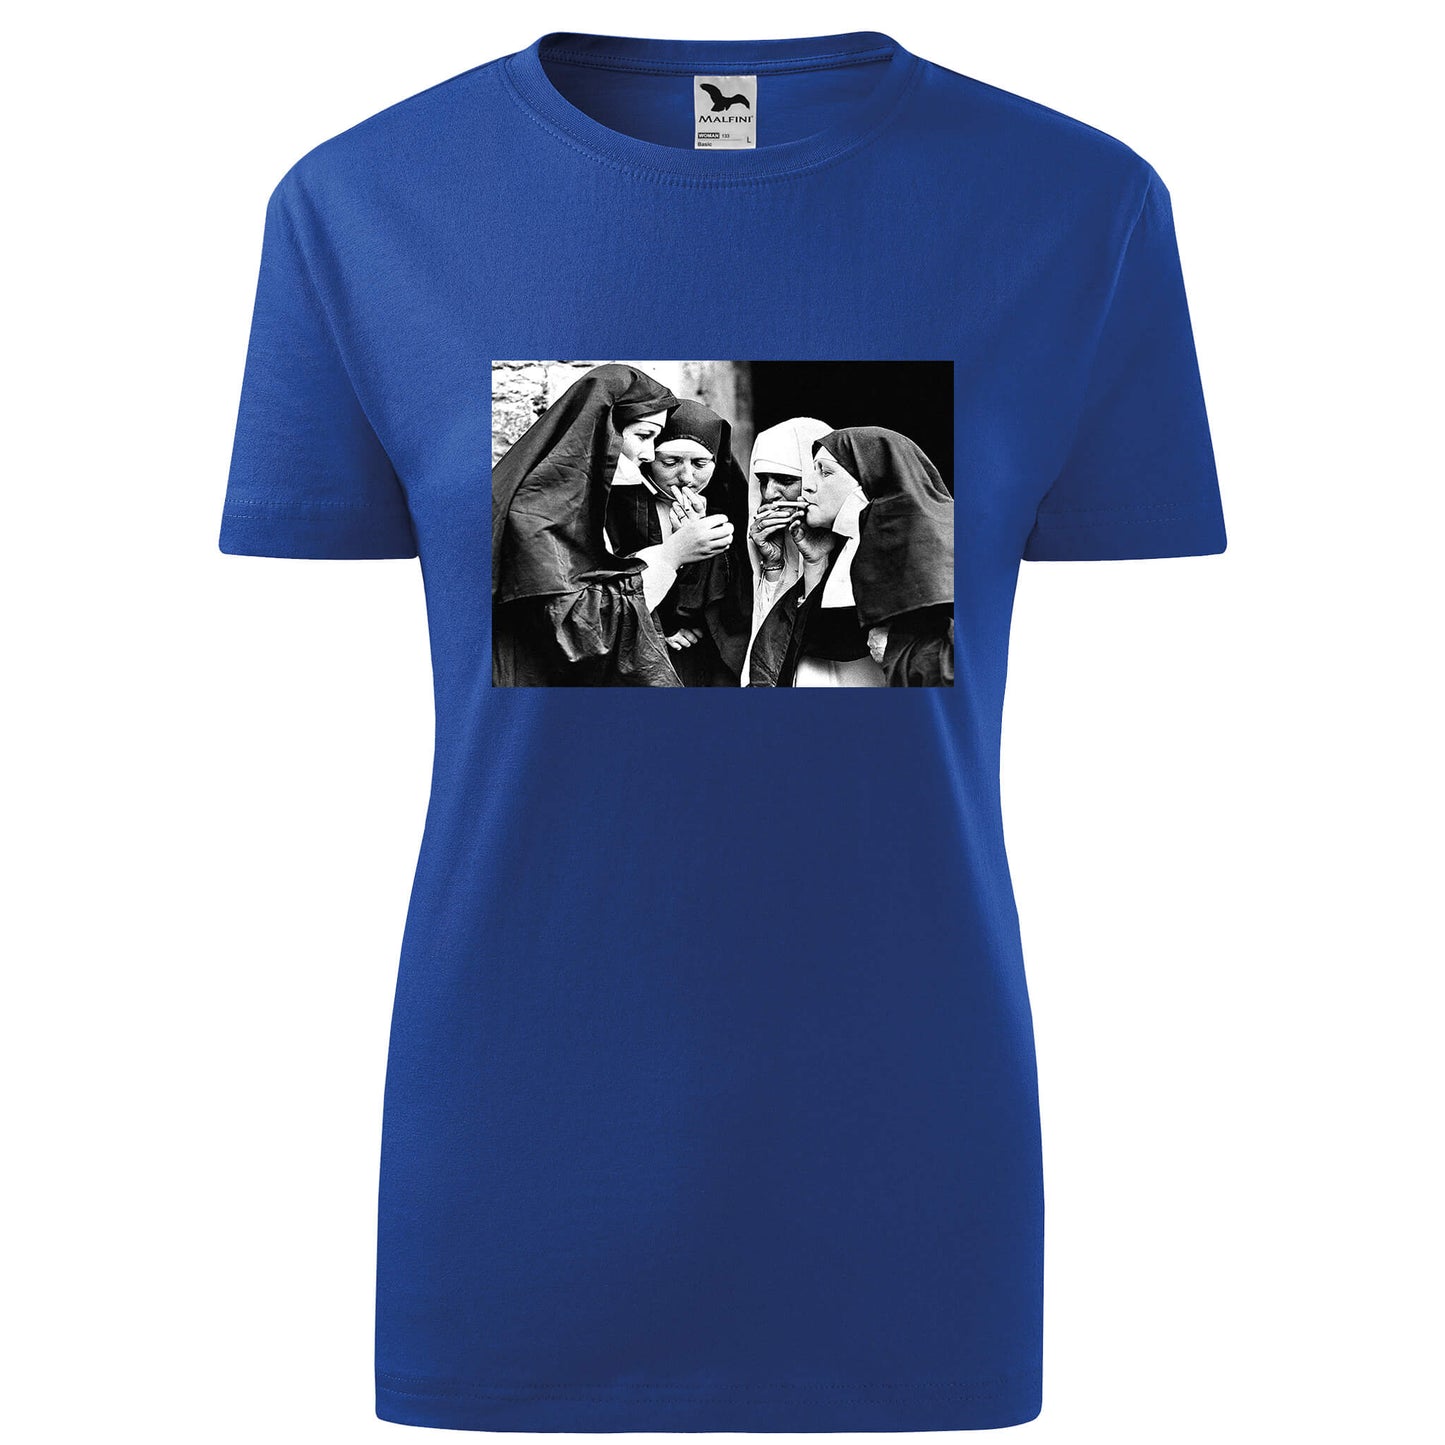 Smoking nuns t-shirt - rvdesignprint